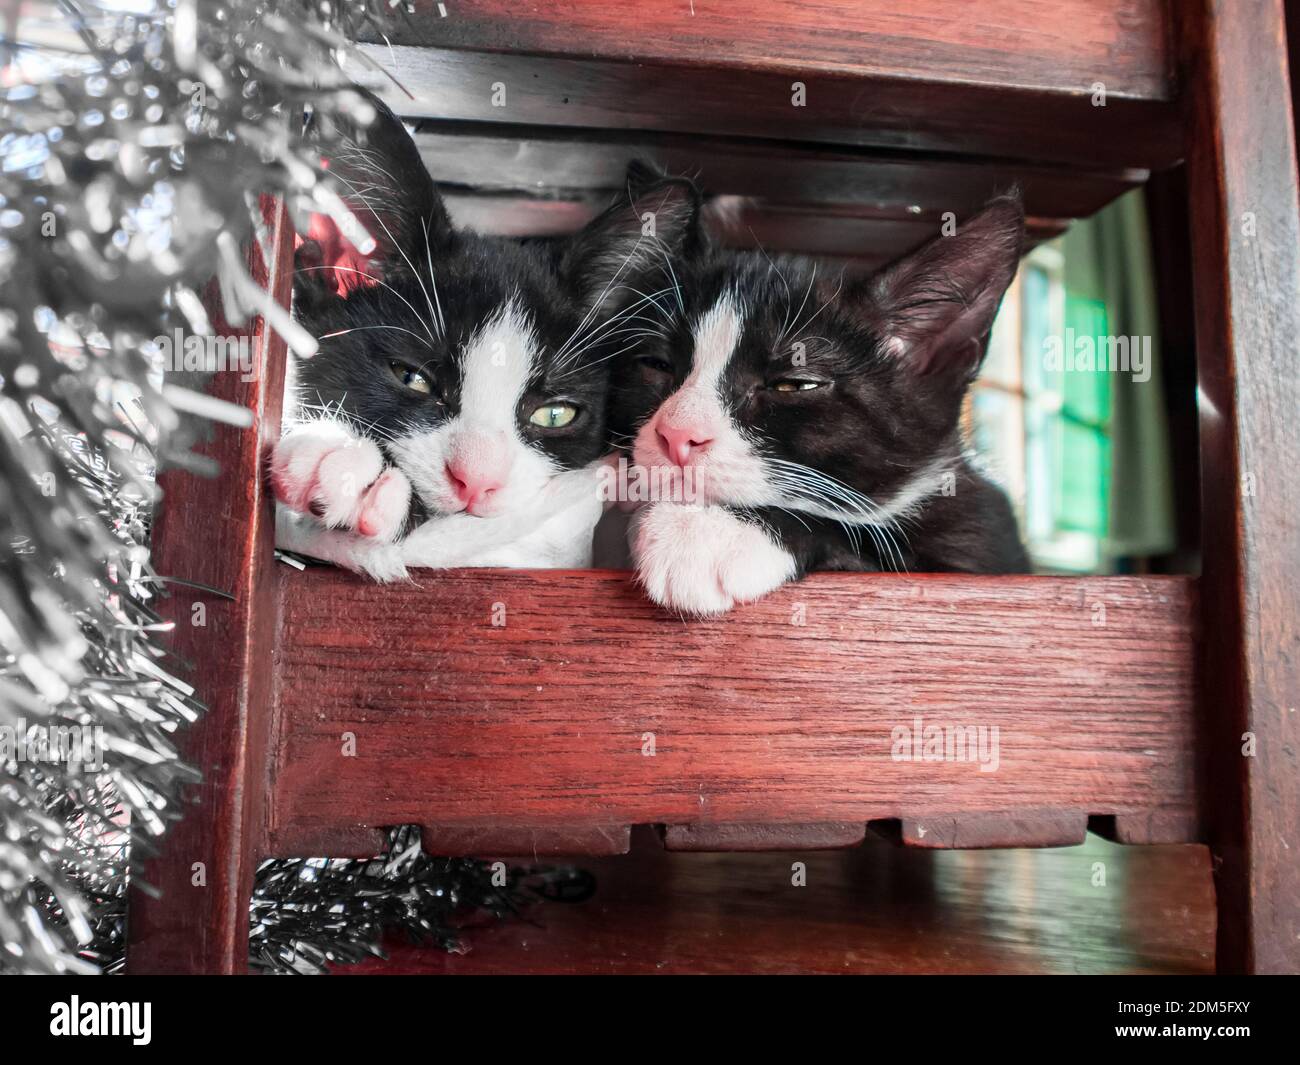 Deux chatons se sont emmêlés sous une chaise rougeâtre le jour de Noël avec la lumière des fenêtres illuminant la guirlande argentée. Banque D'Images